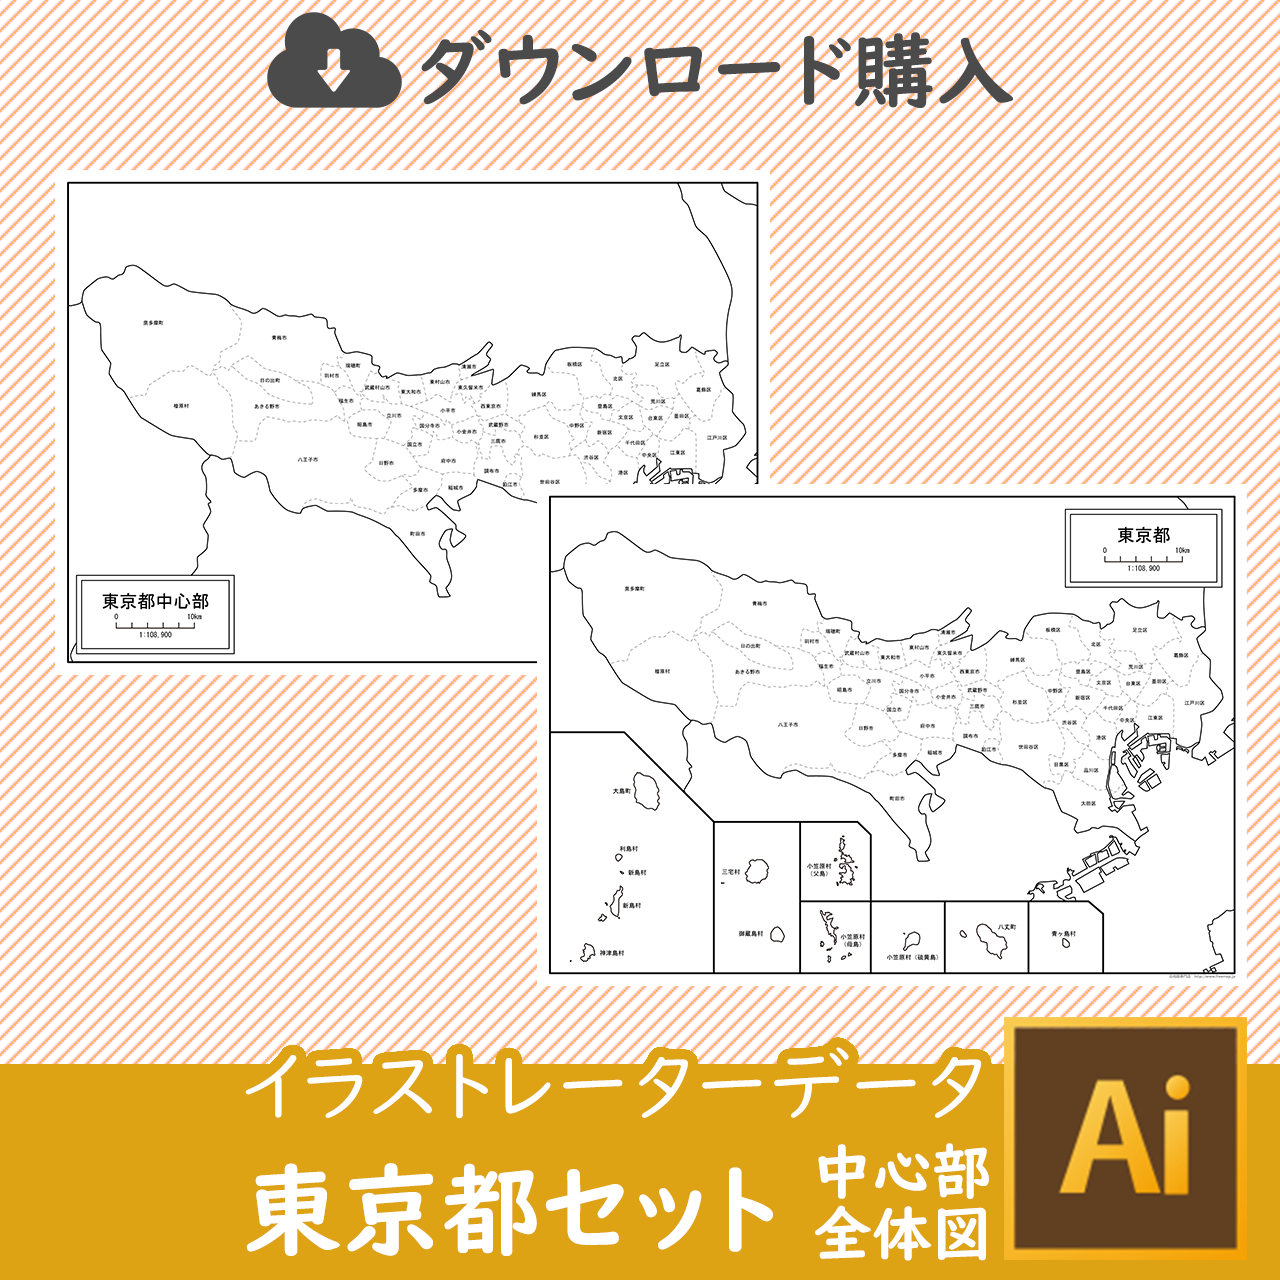 東京都全体のaiデータのサムネイル画像